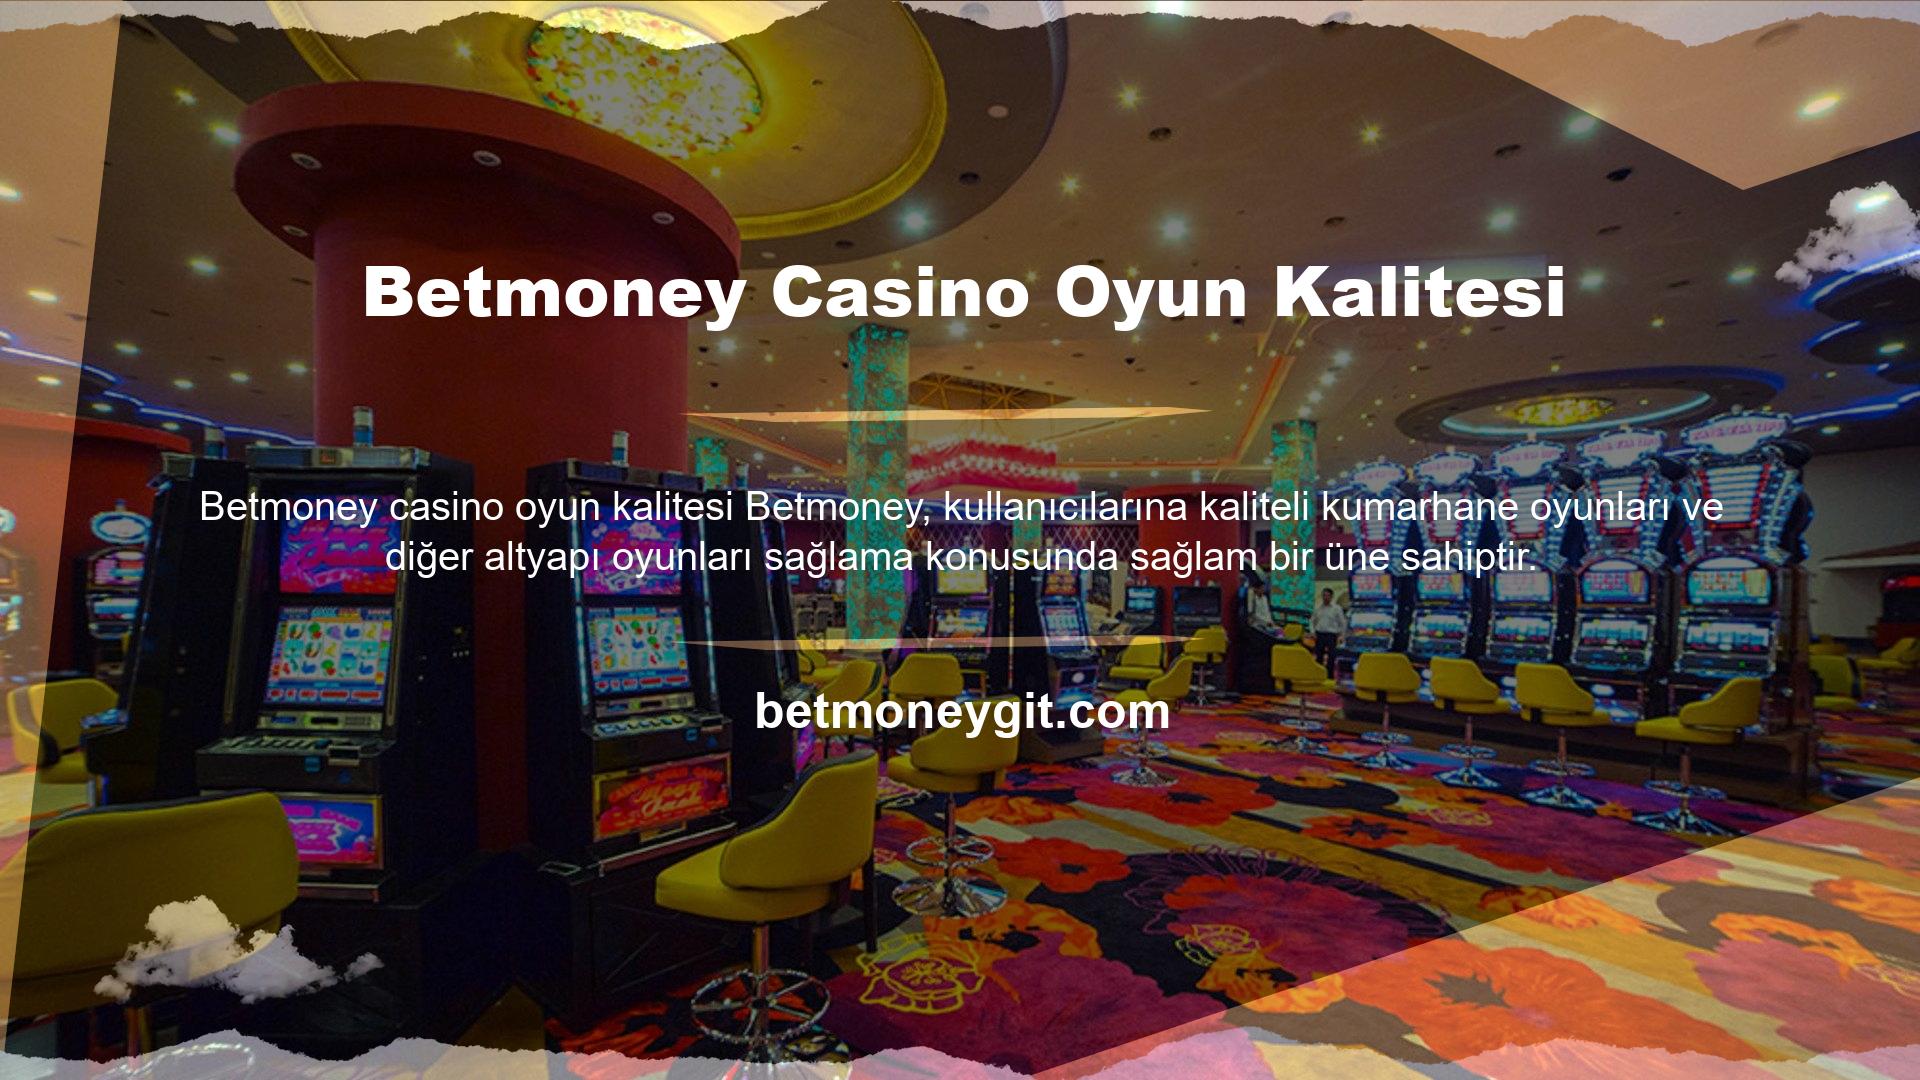 Betmoney Casino Oyun Kalitesi